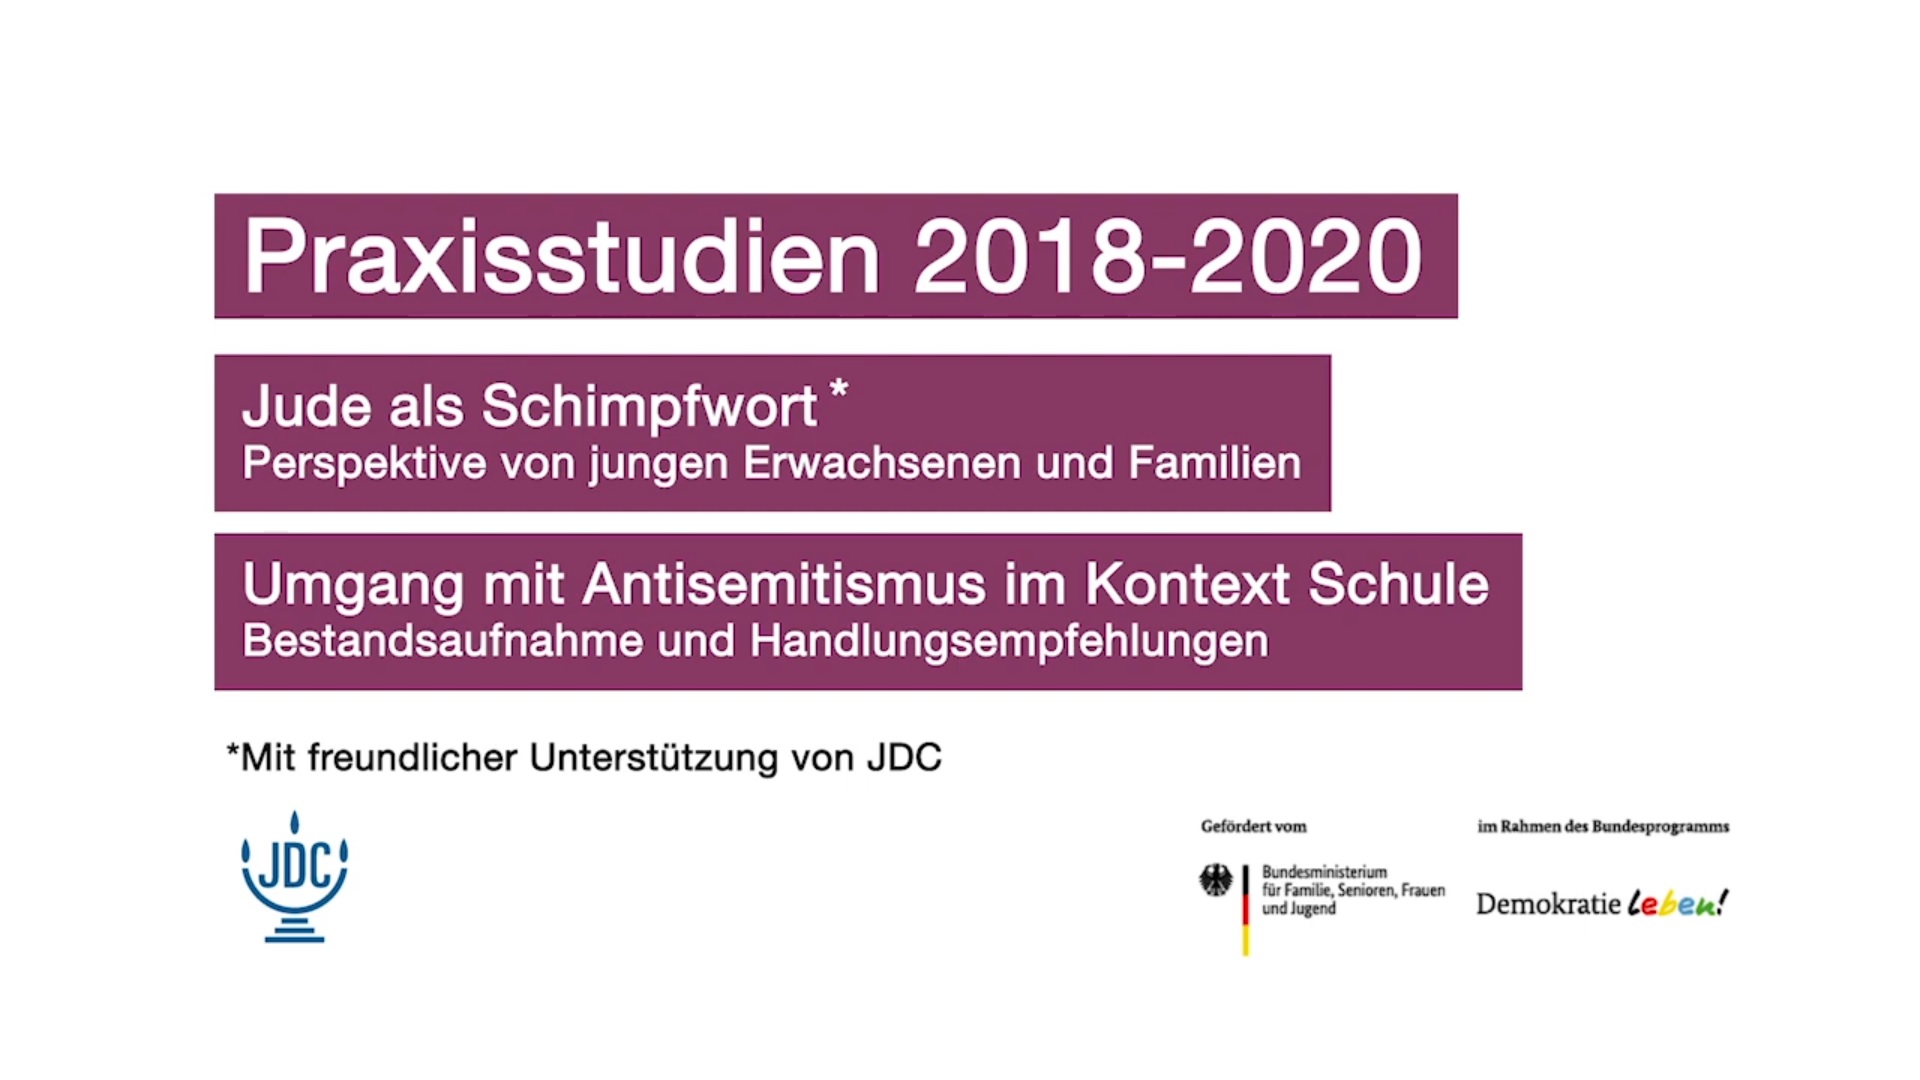 Auf dem Bild steht Praxisstudien 2018-2020, darunter Jude als Schimpfwort und darunter Umgang mit Antisemitismus im Kontext Schule